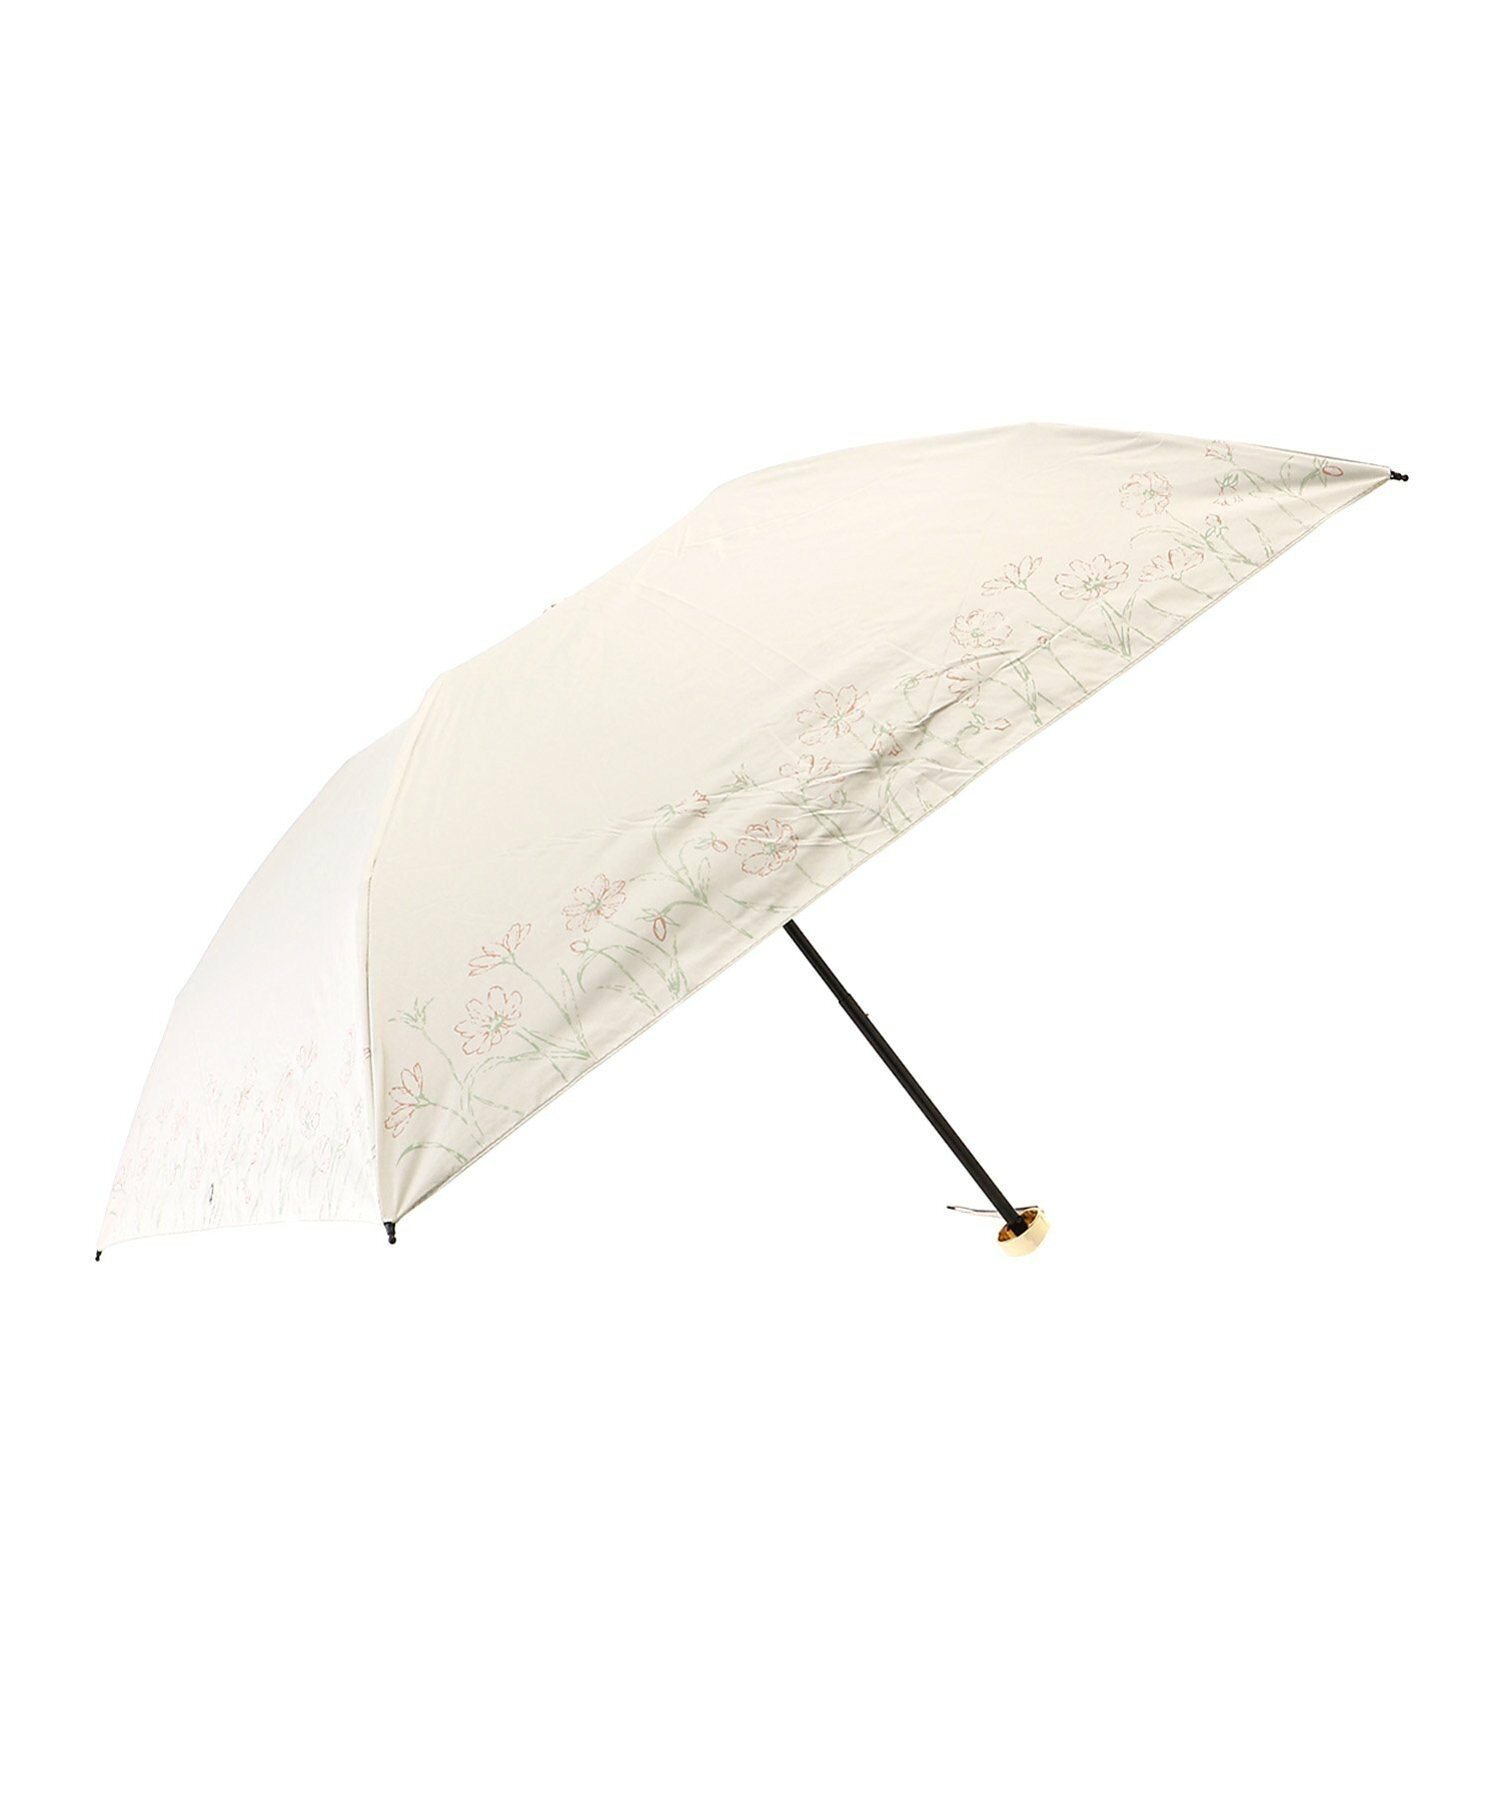 (L)カシュネ cache nez / 軽量スライヴフラワープリントカーボン折りたたみ日傘 晴雨兼用 折りたたみ傘  レイン